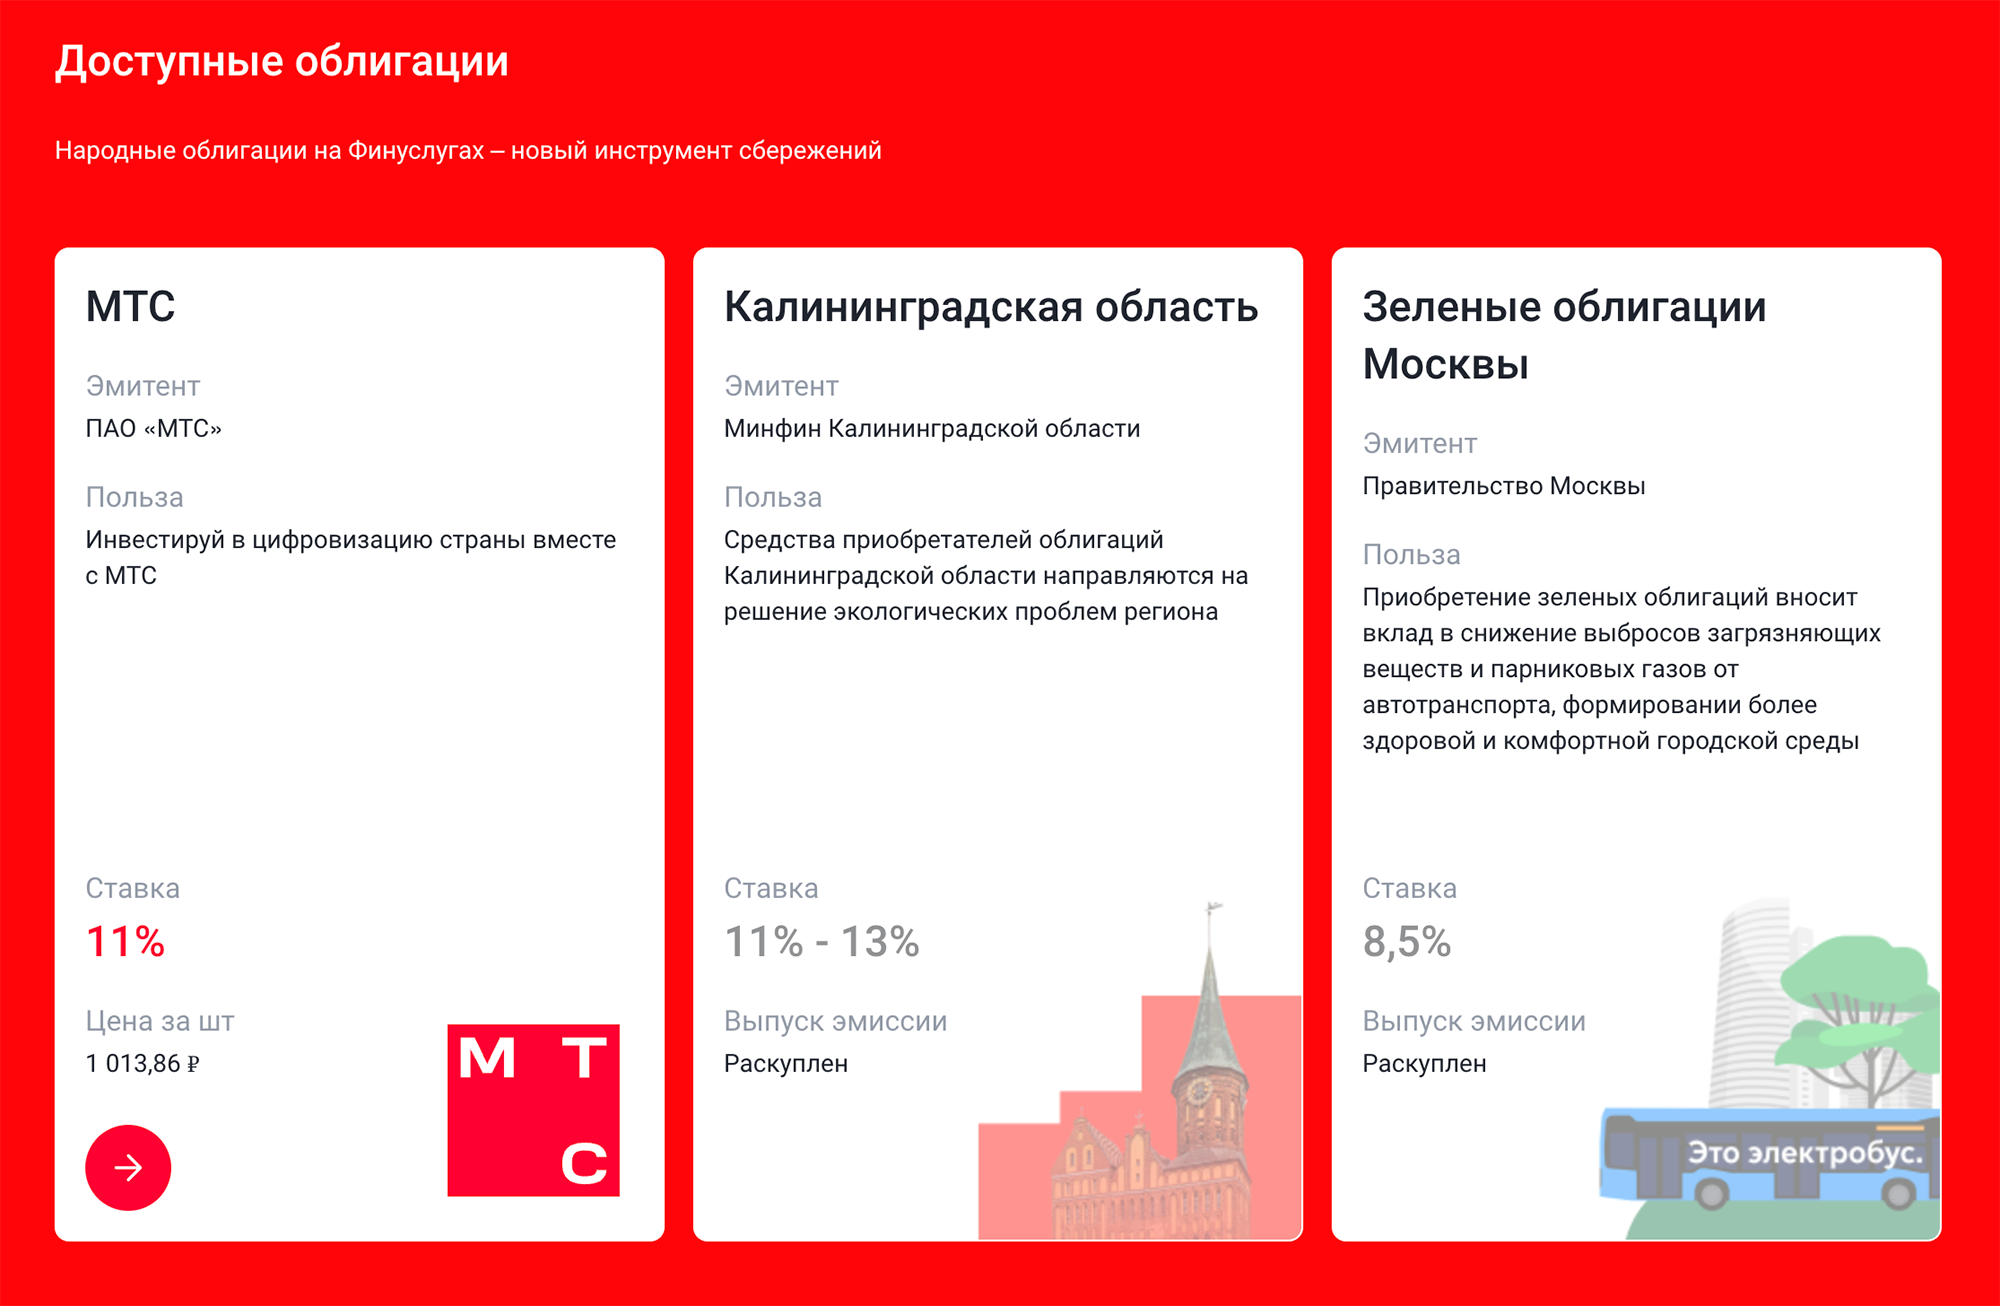 Инвесторам «Финуслуги» предлагают лишь четыре вида облигаций, причем по трем из них бумаги раскуплены. Источник: finuslugi.ru